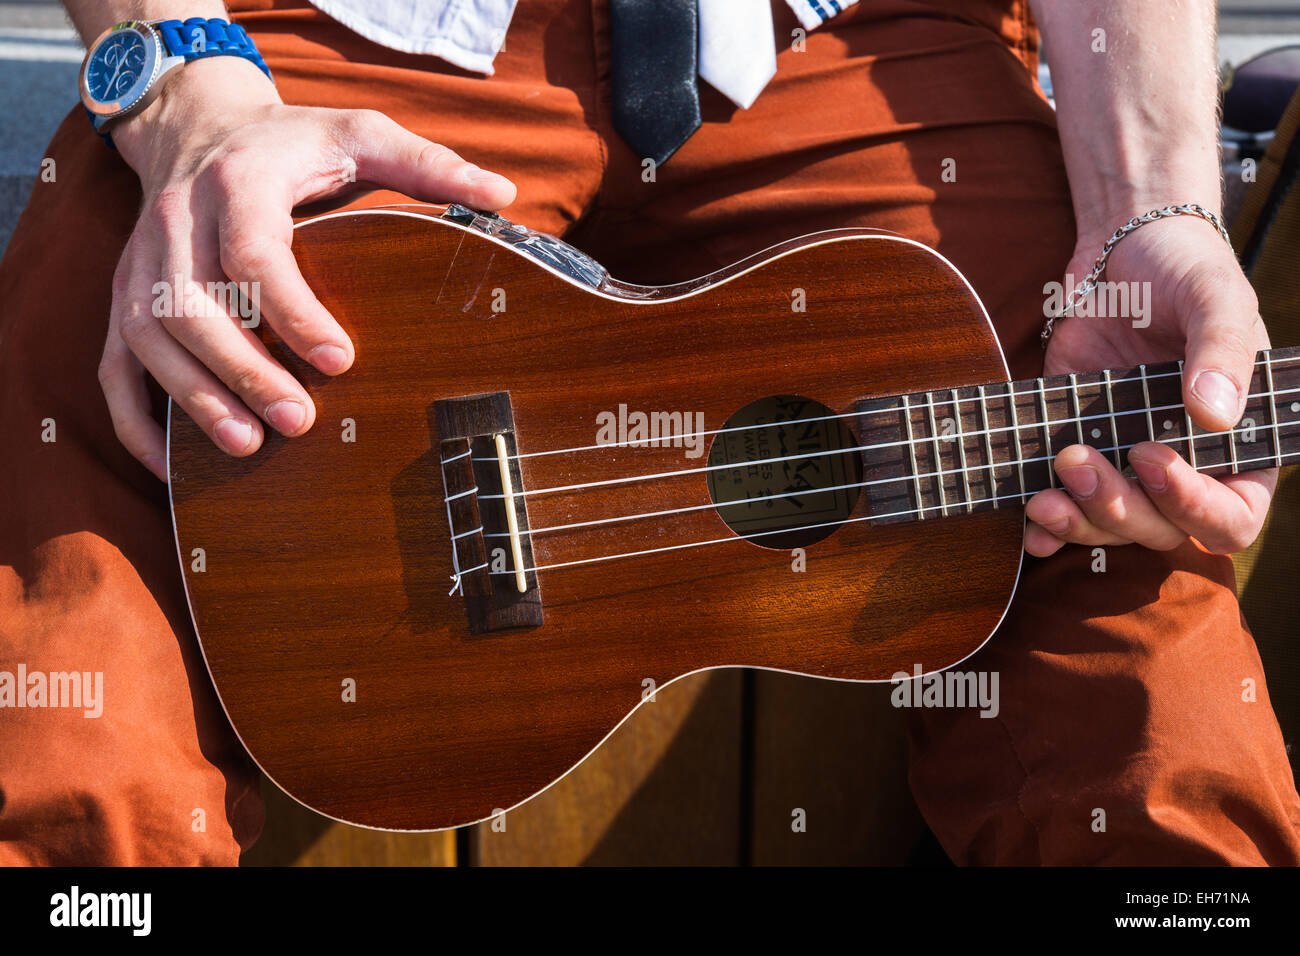 Nicht identifizierte unkenntlich junge männliche Person hält Hawaii-Gitarre Ukulele in seinen Händen. Stockfoto